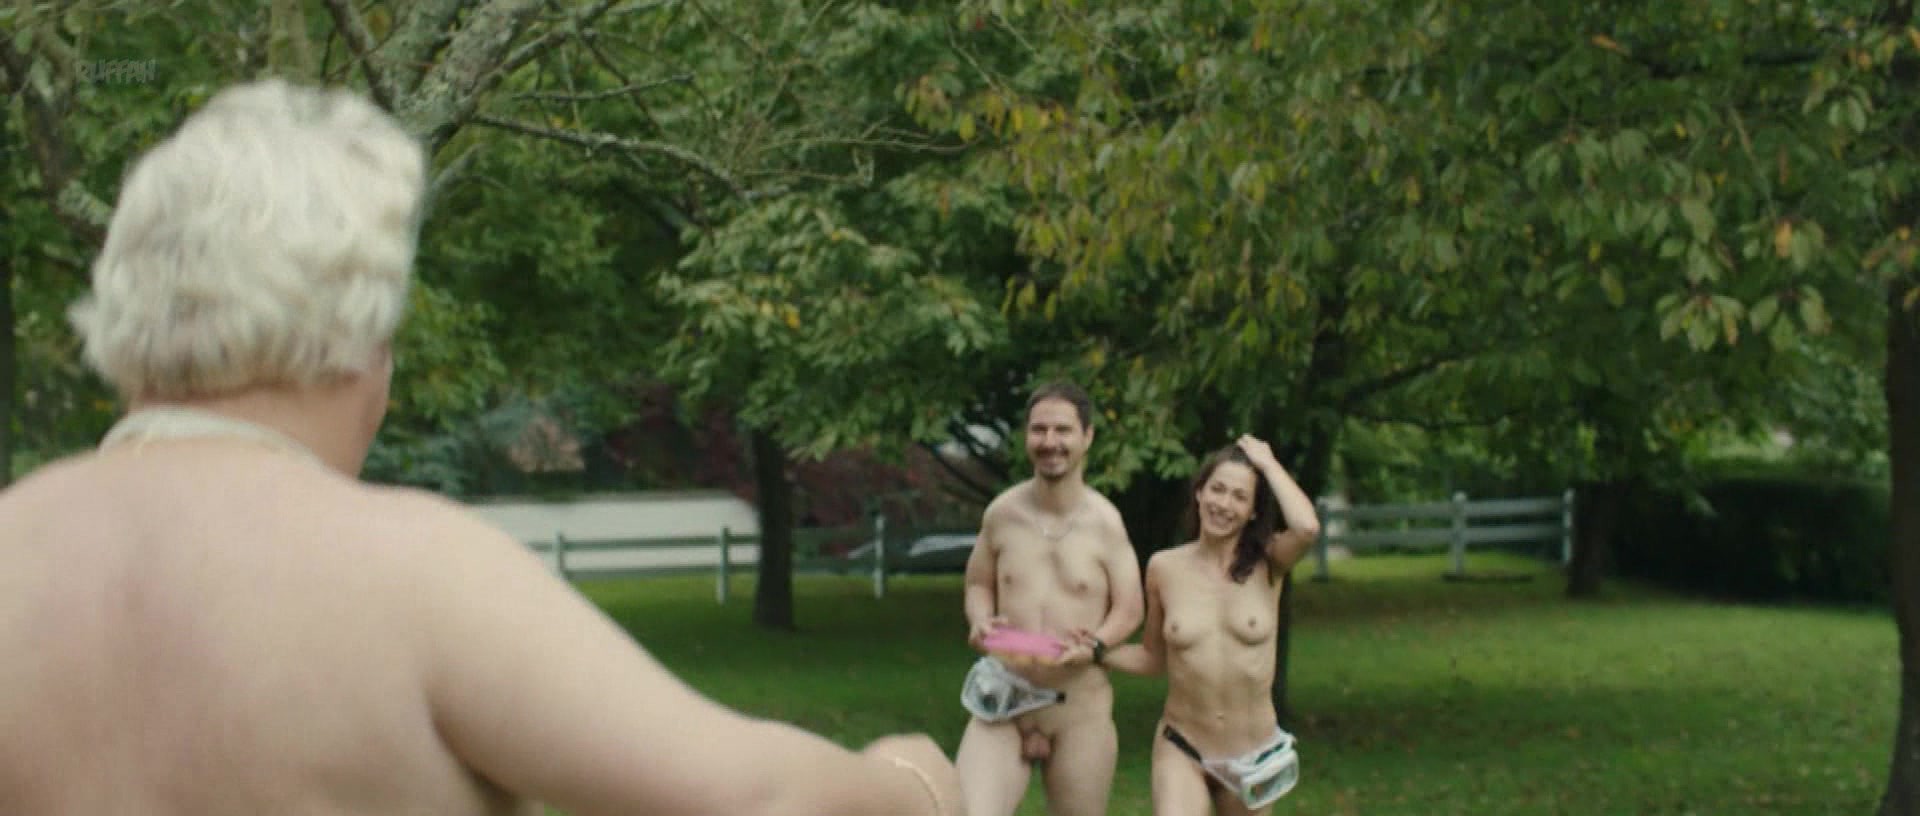 Nude Video Celebs Malya Roman Nude Val Rie Decobert Koretzky Nude Brigitte Faure Nude Nu